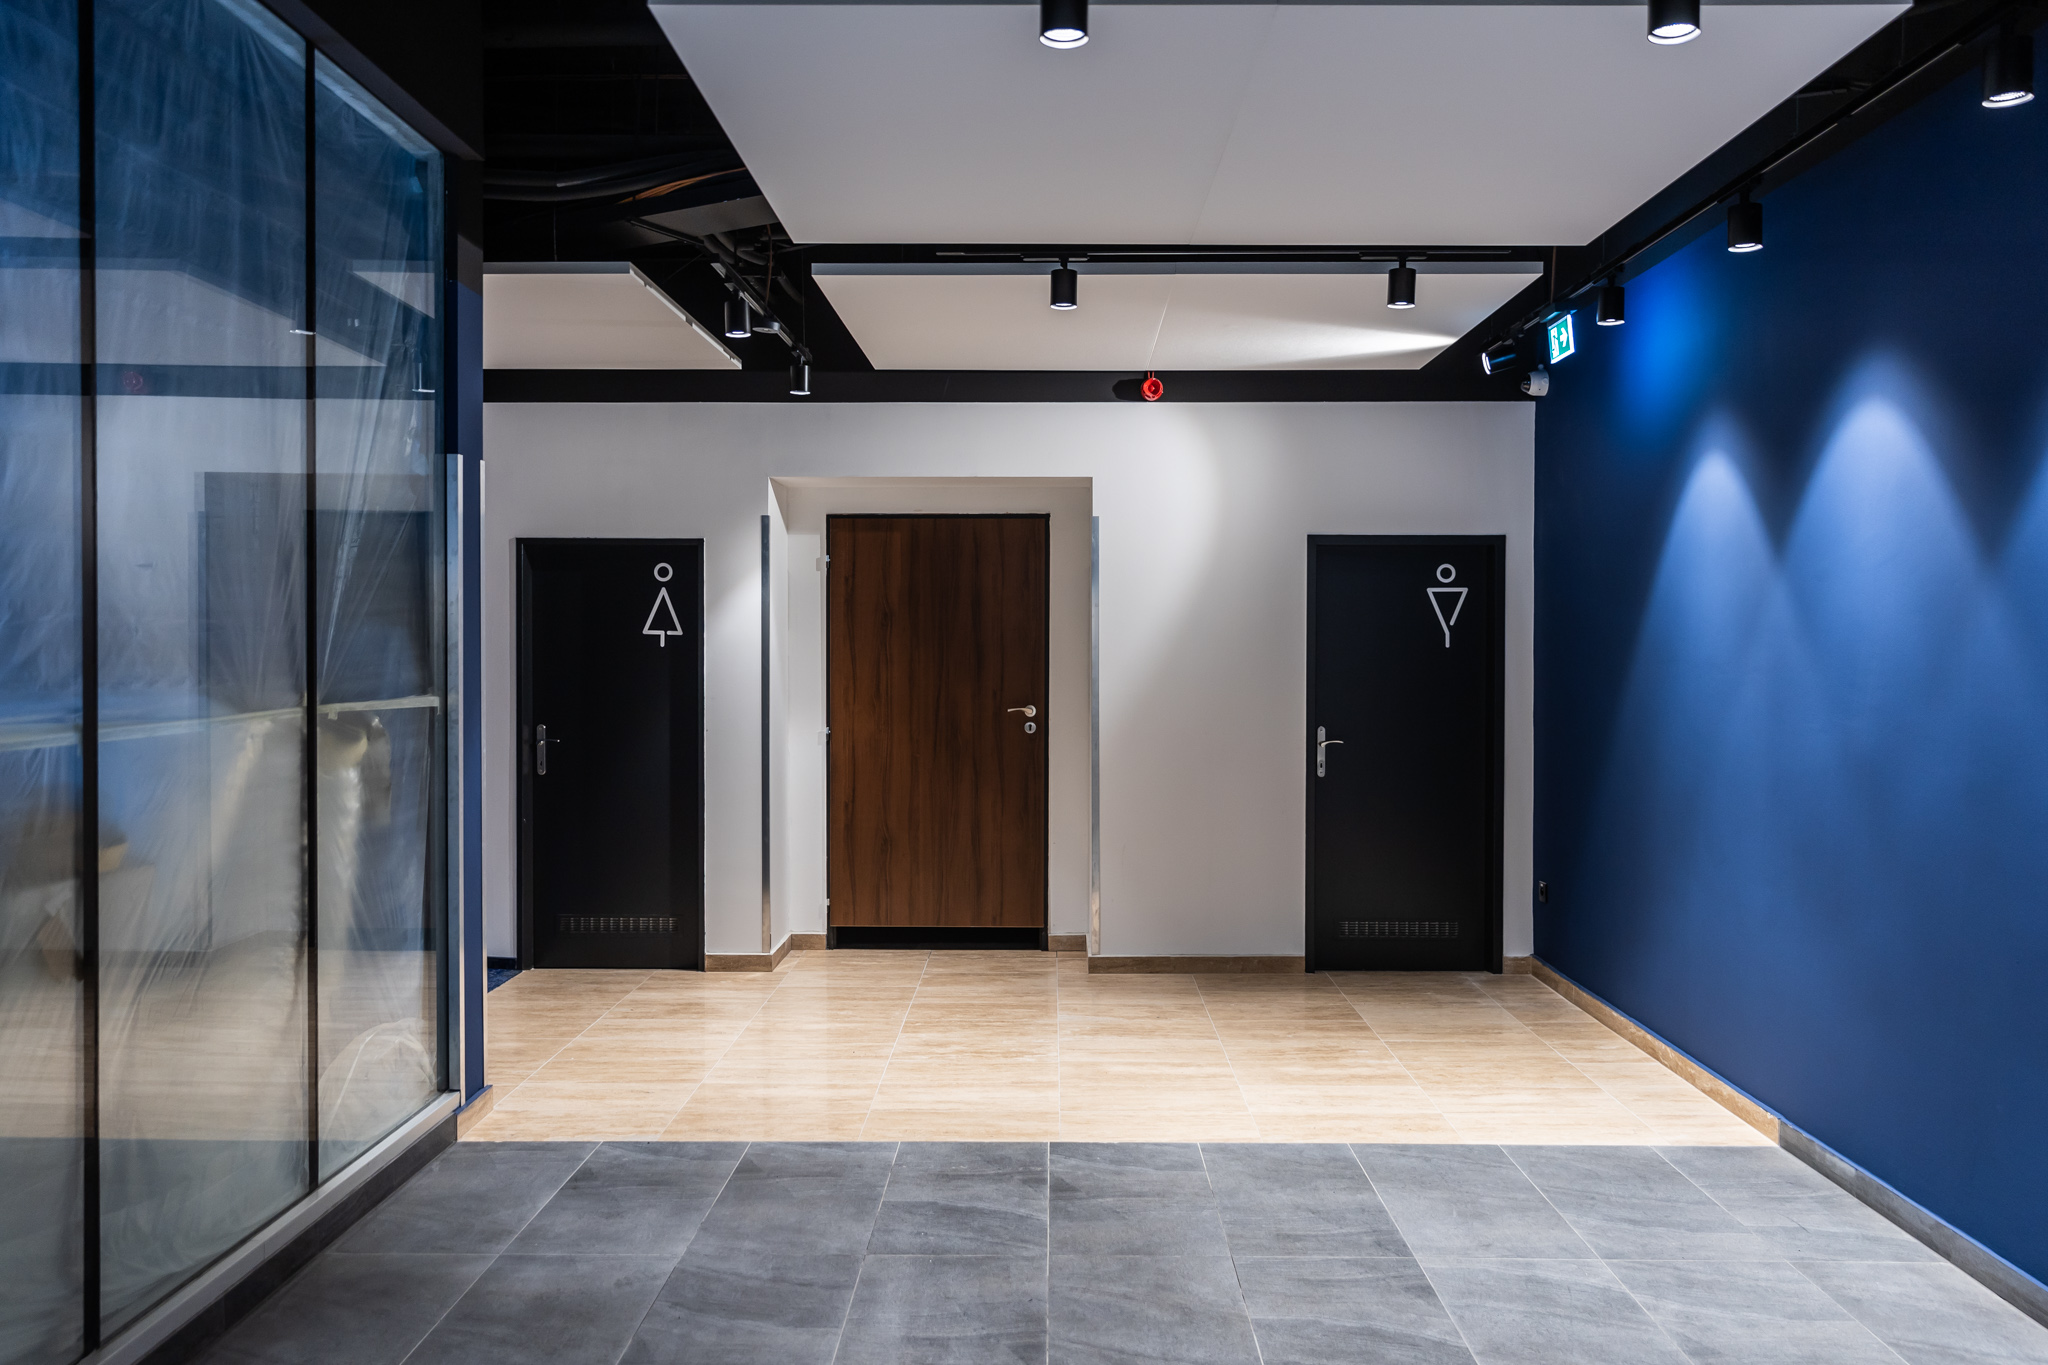 Zrekonštruované priestory Kina Lumière - chodba a priestory toaliet